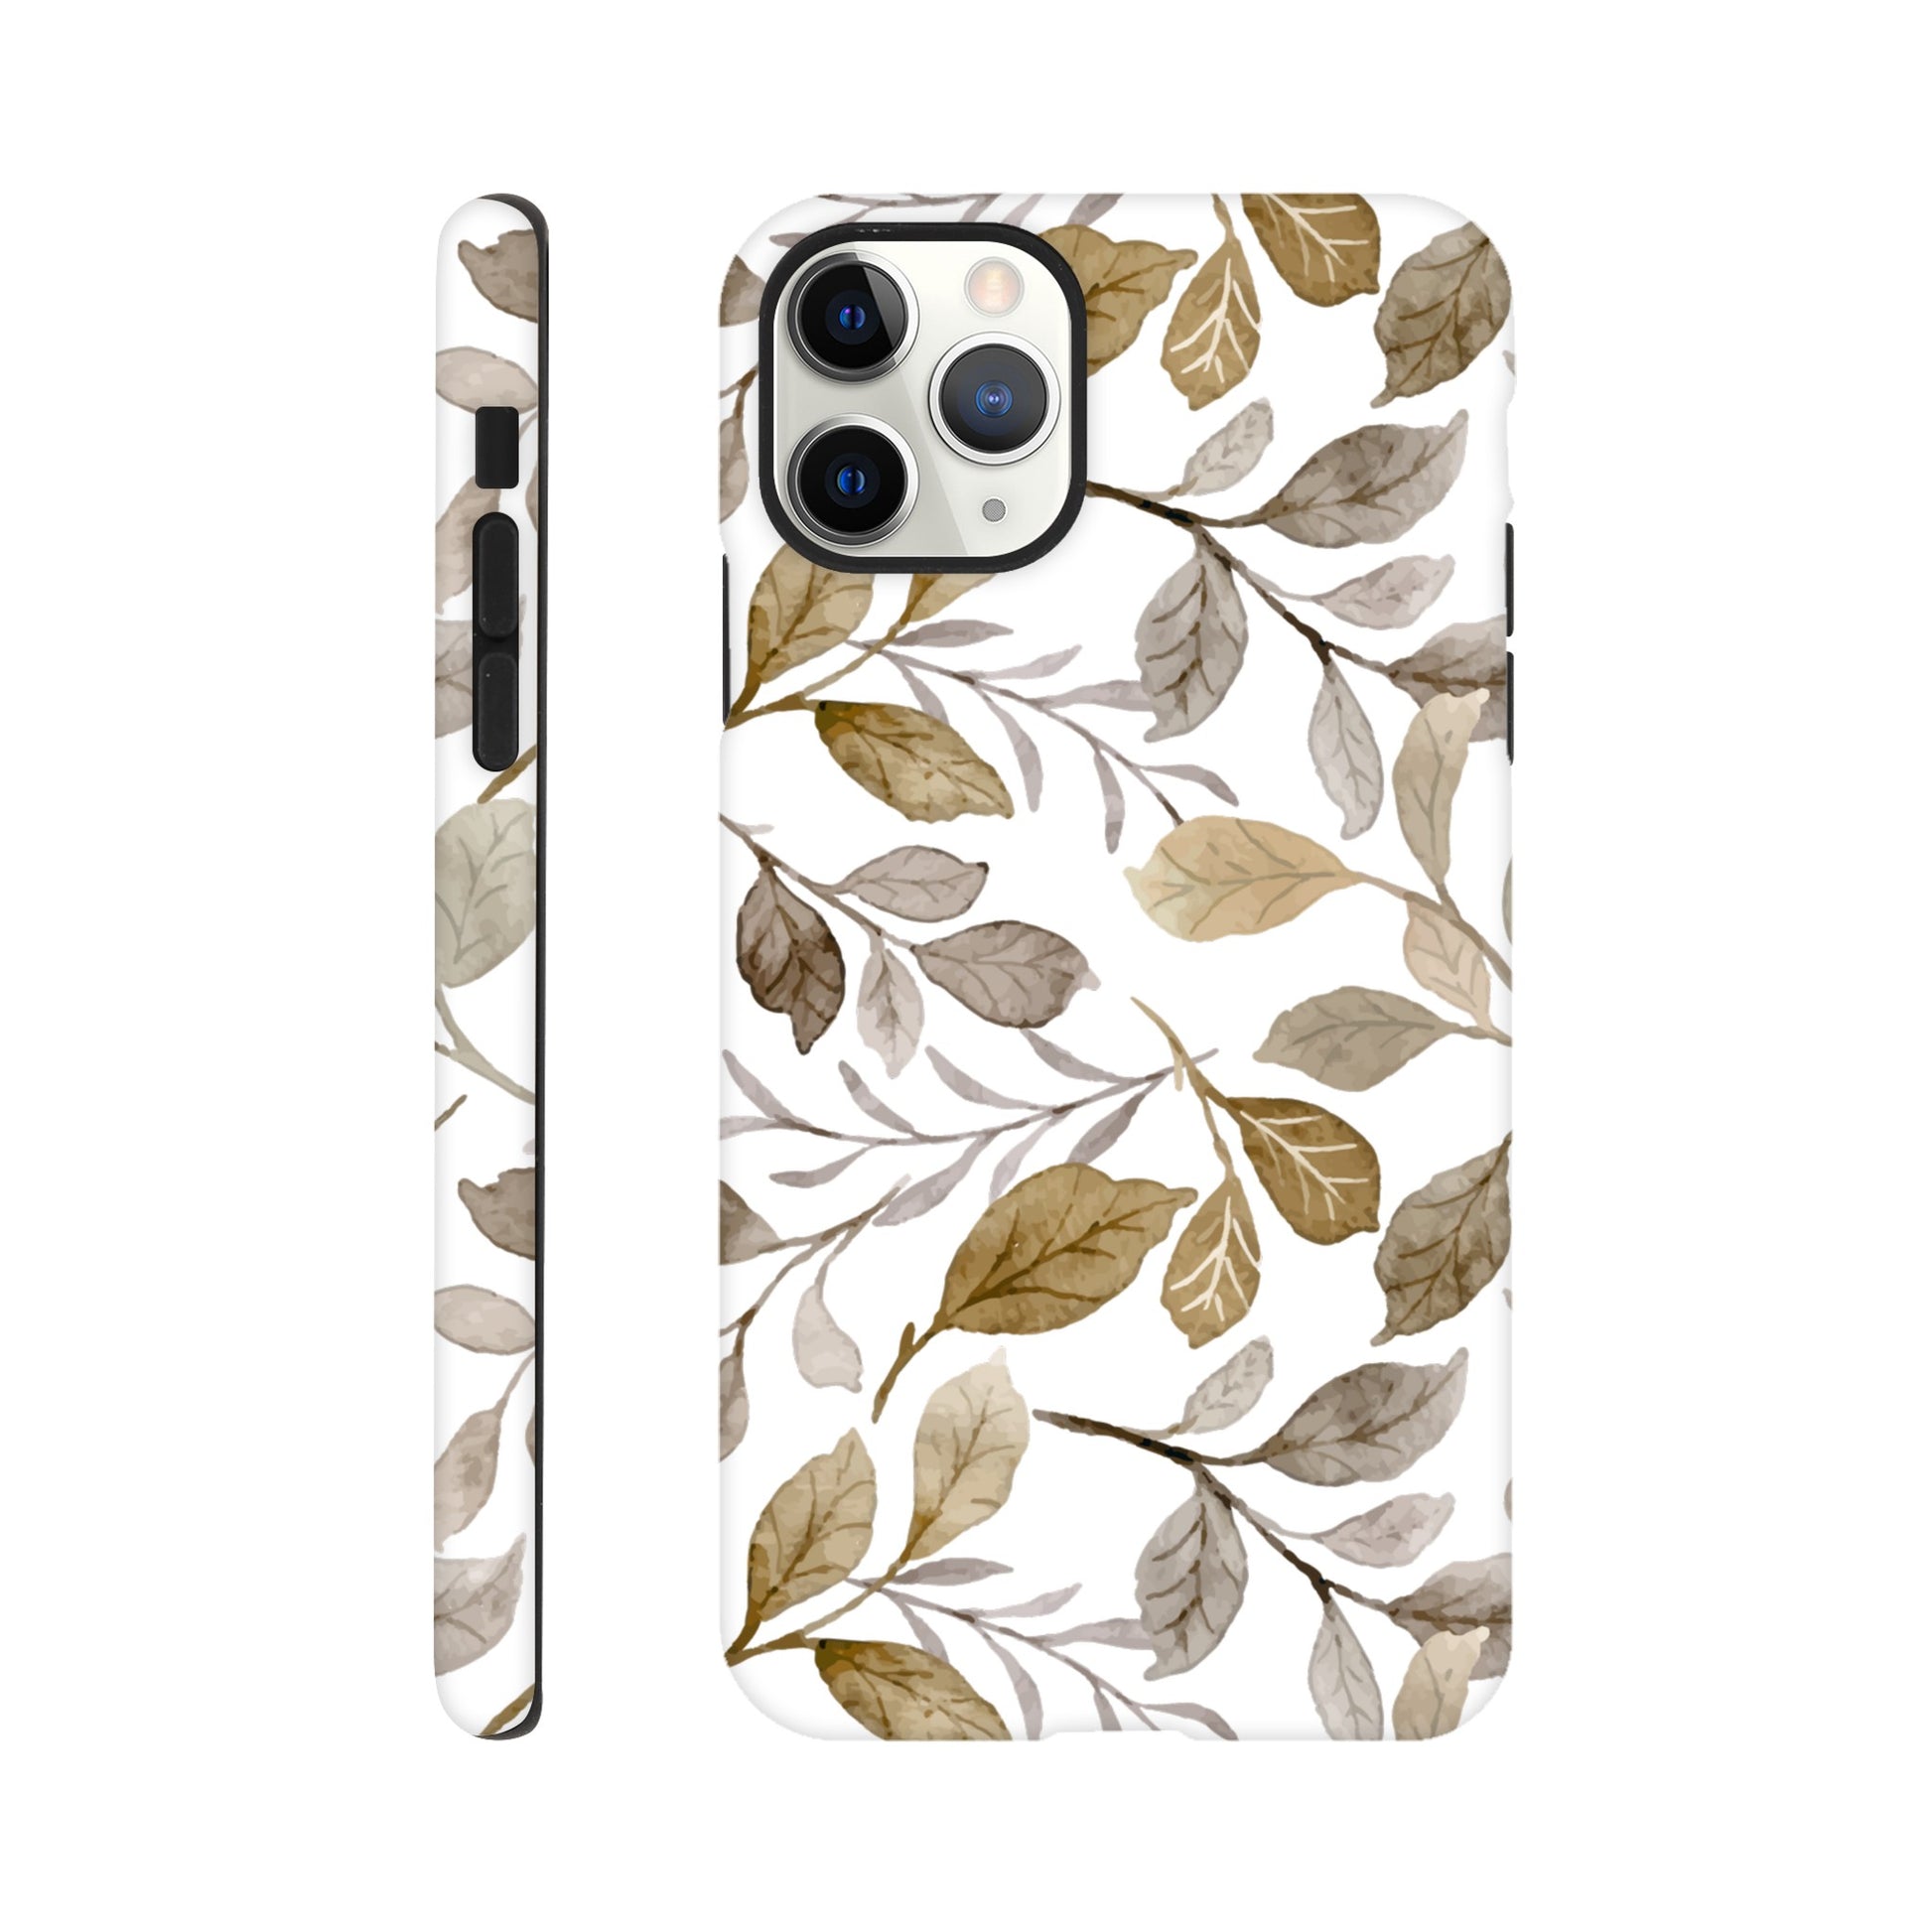 Autumn Leaves - Phone Tough Case iPhone 11 Pro Max Phone Case Plants